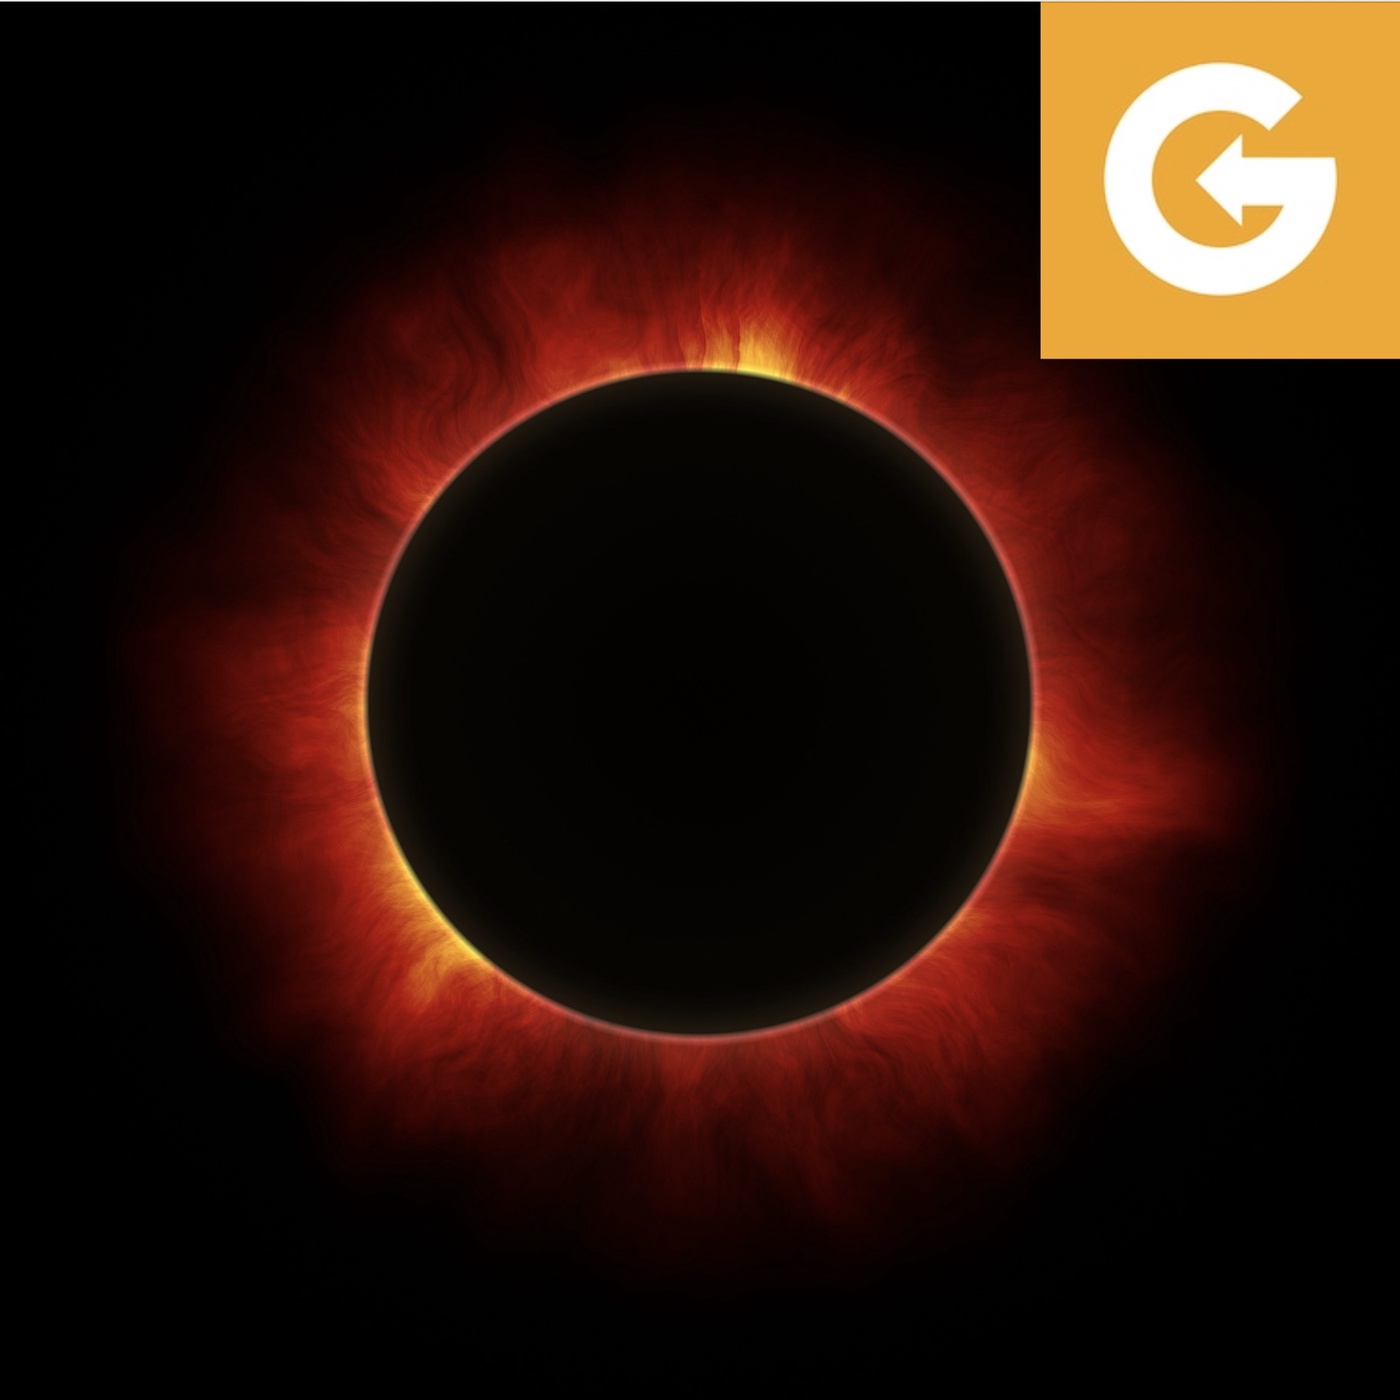 Götter, Krieg und Wissenschaft: Die Geschichte der Sonnenfinsternisse, Teil 1